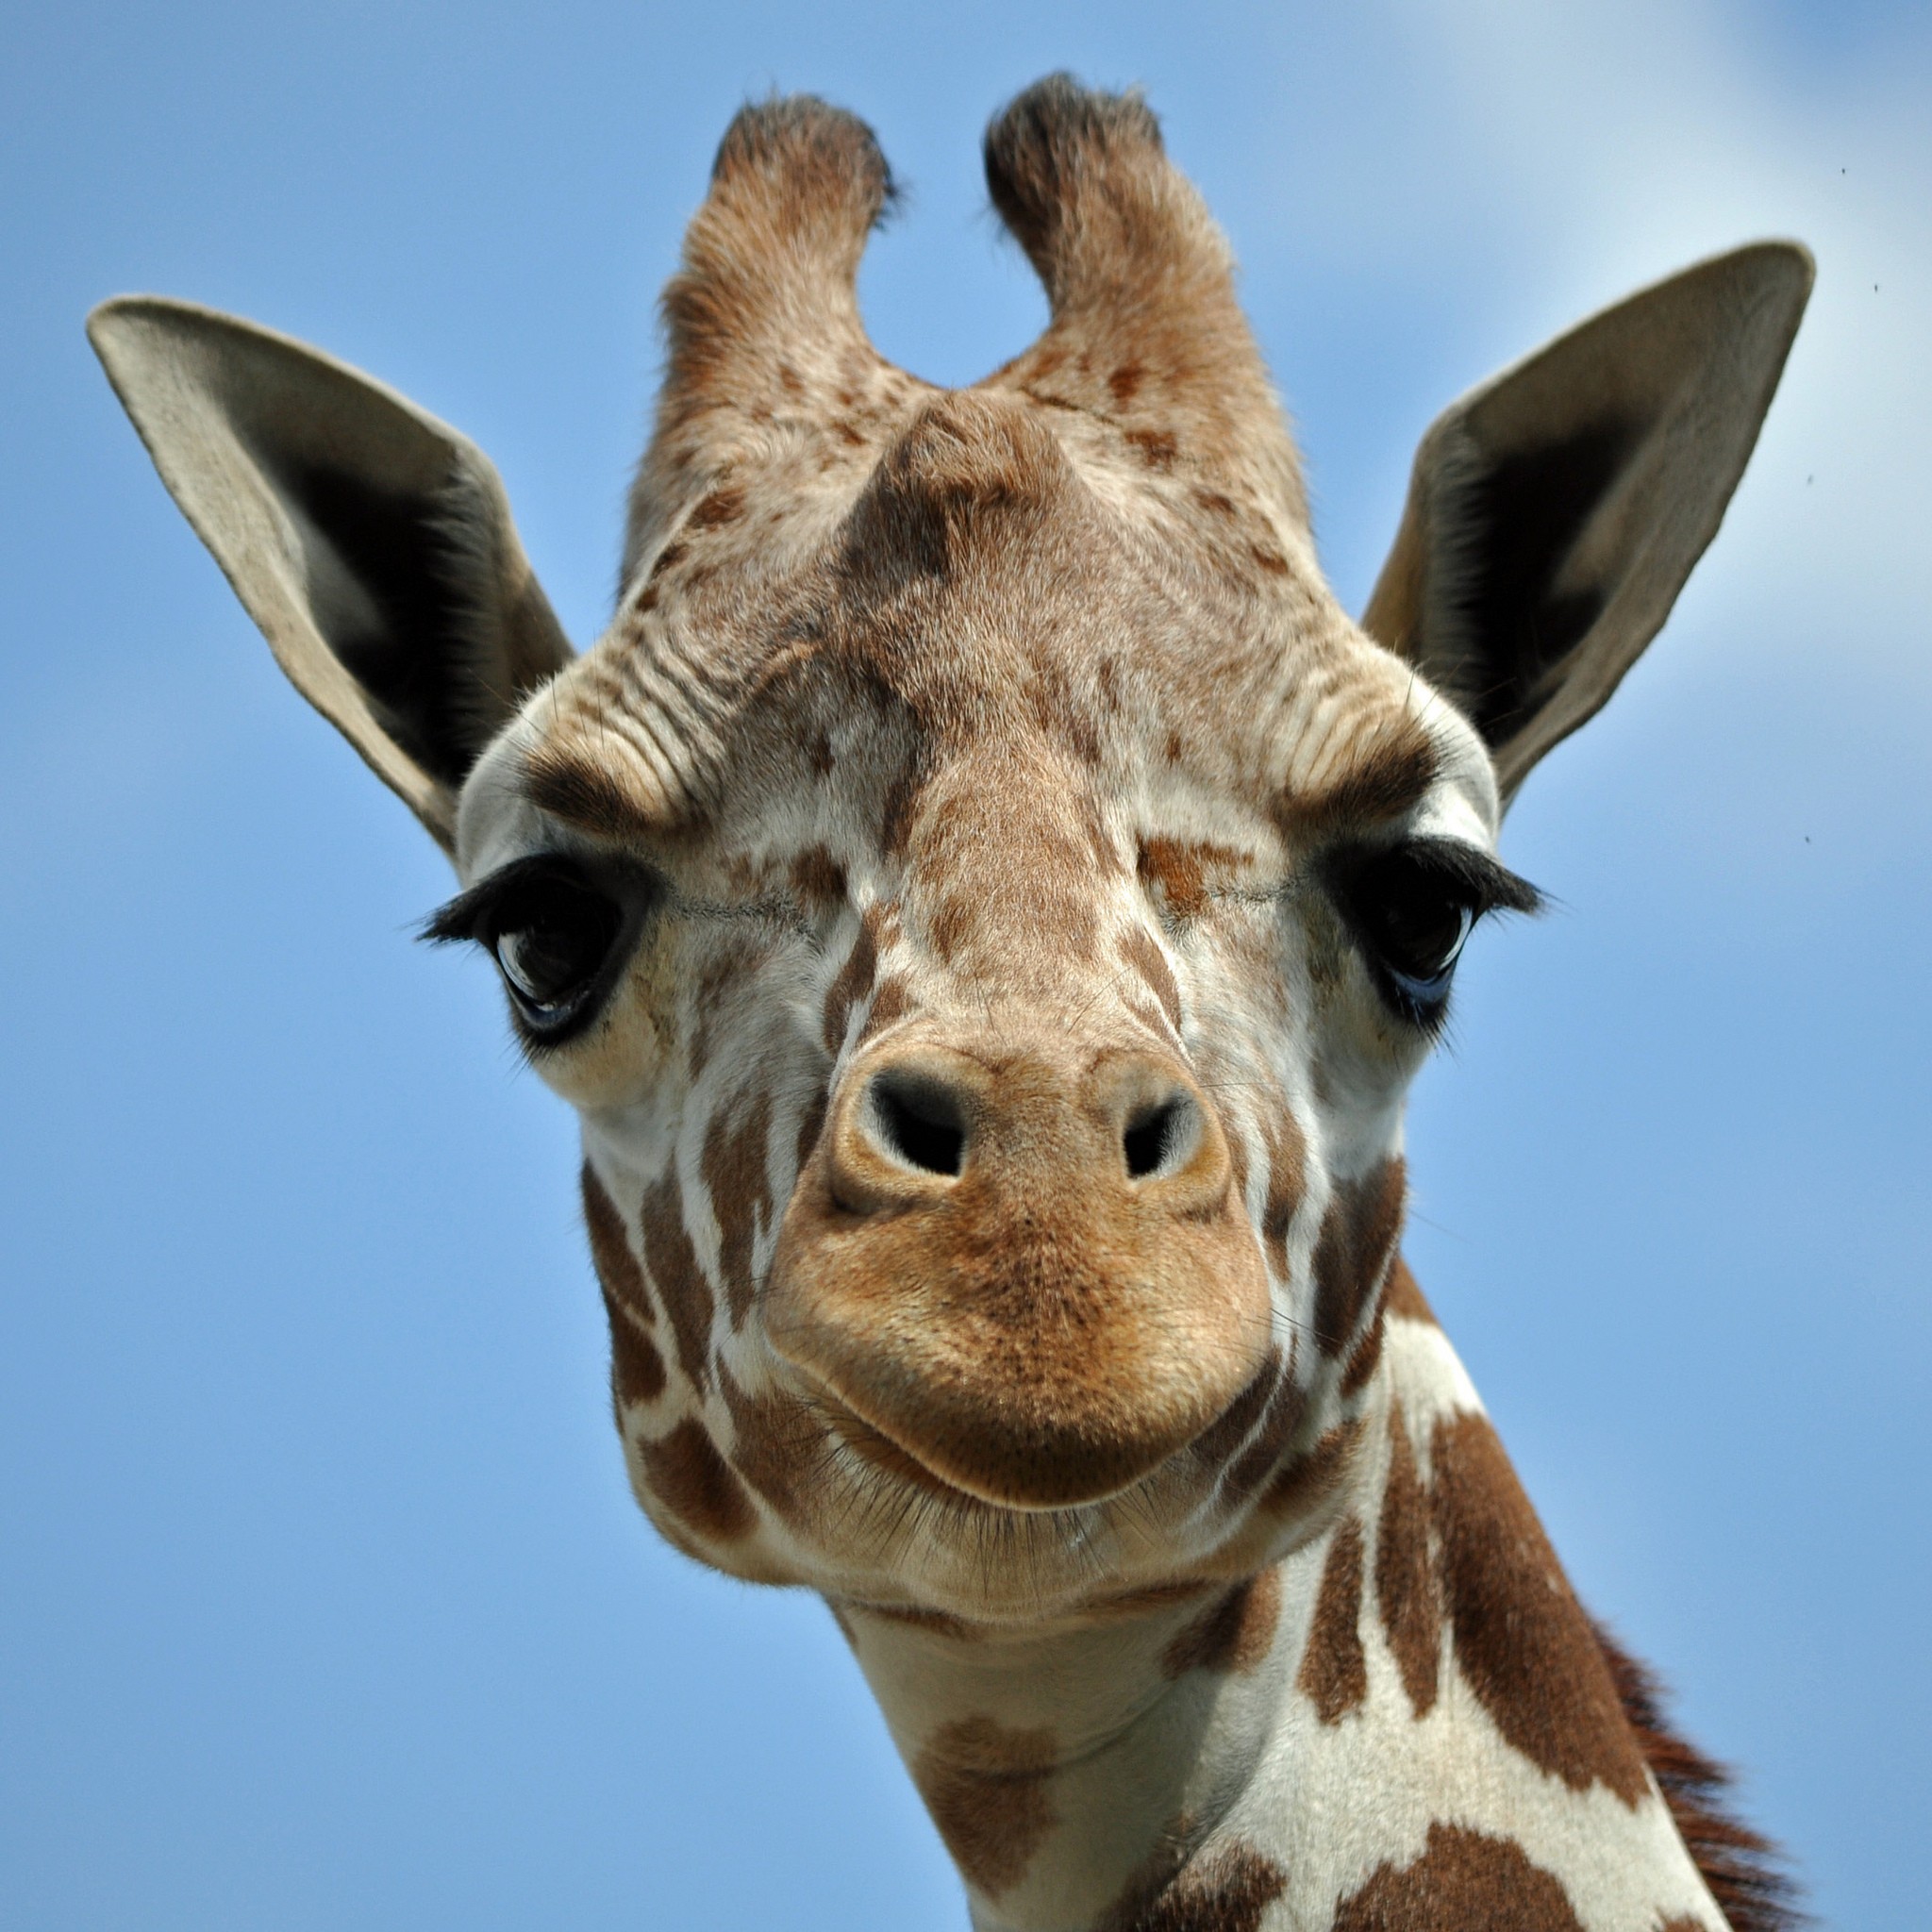 O som emitido pelas girafas é baixo demais para ser captado pelo ouvido humano (Foto: Flickr/Peter Miller)